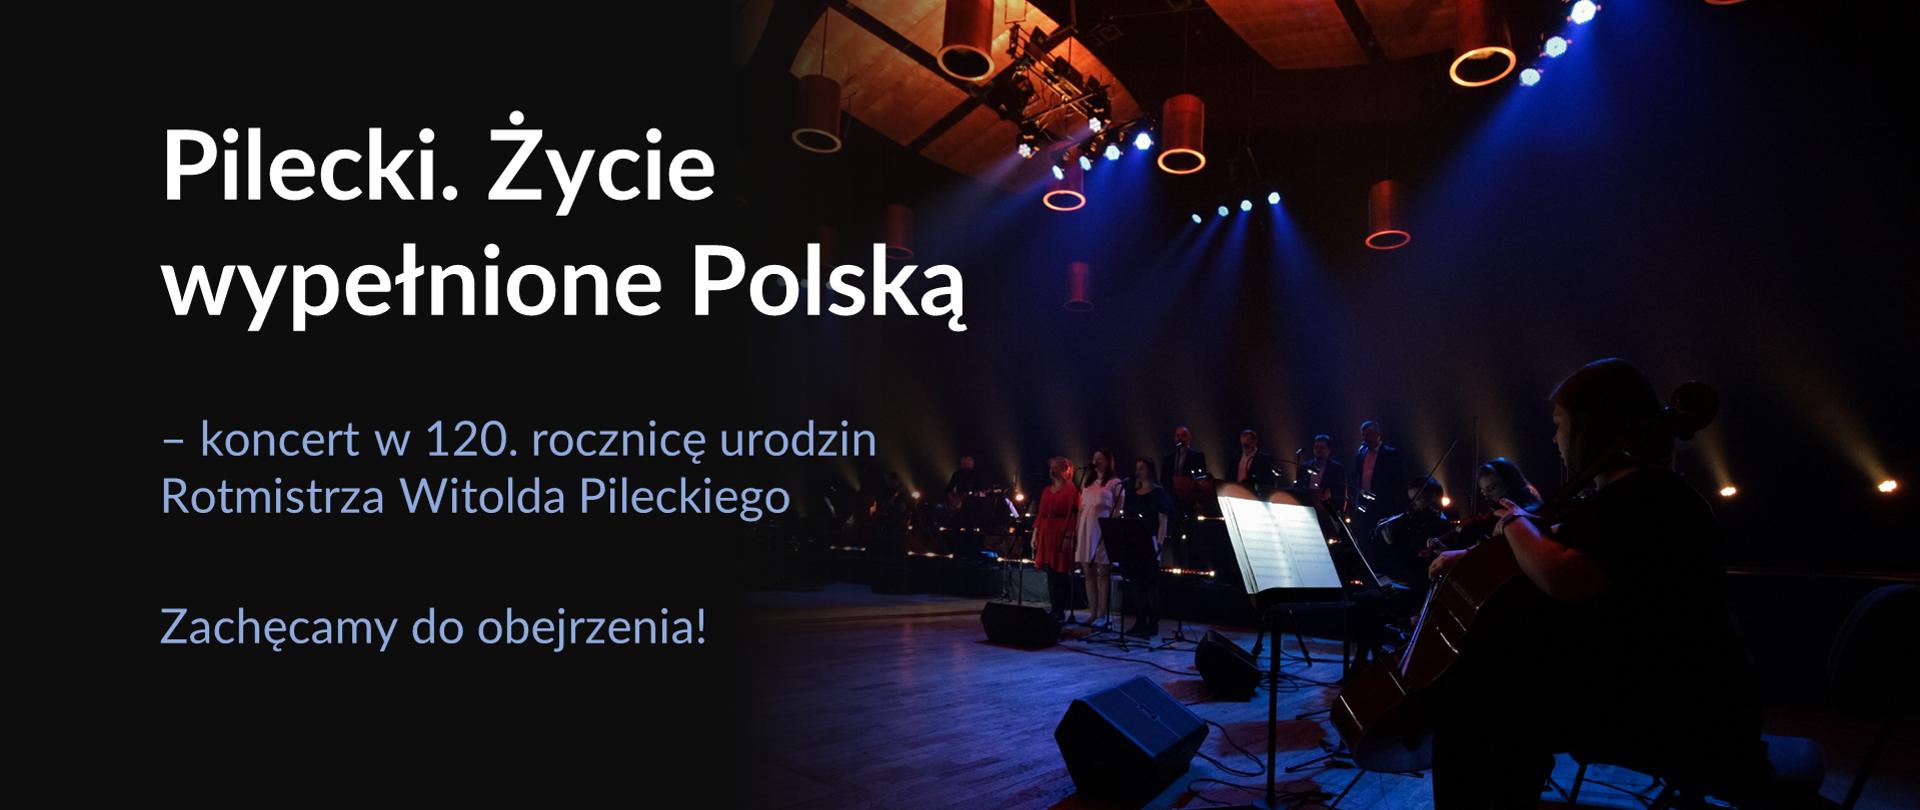 Zdjęcie sali koncertowej, na którym widać grupę artystów grających na instrumentach i stojących przy mikrofonach. Po lewej stronie napis „Pilecki. Życie wypełnione Polską” - koncert w 120. rocznicę urodzin Rotmistrza. Zachęcamy do obejrzenia